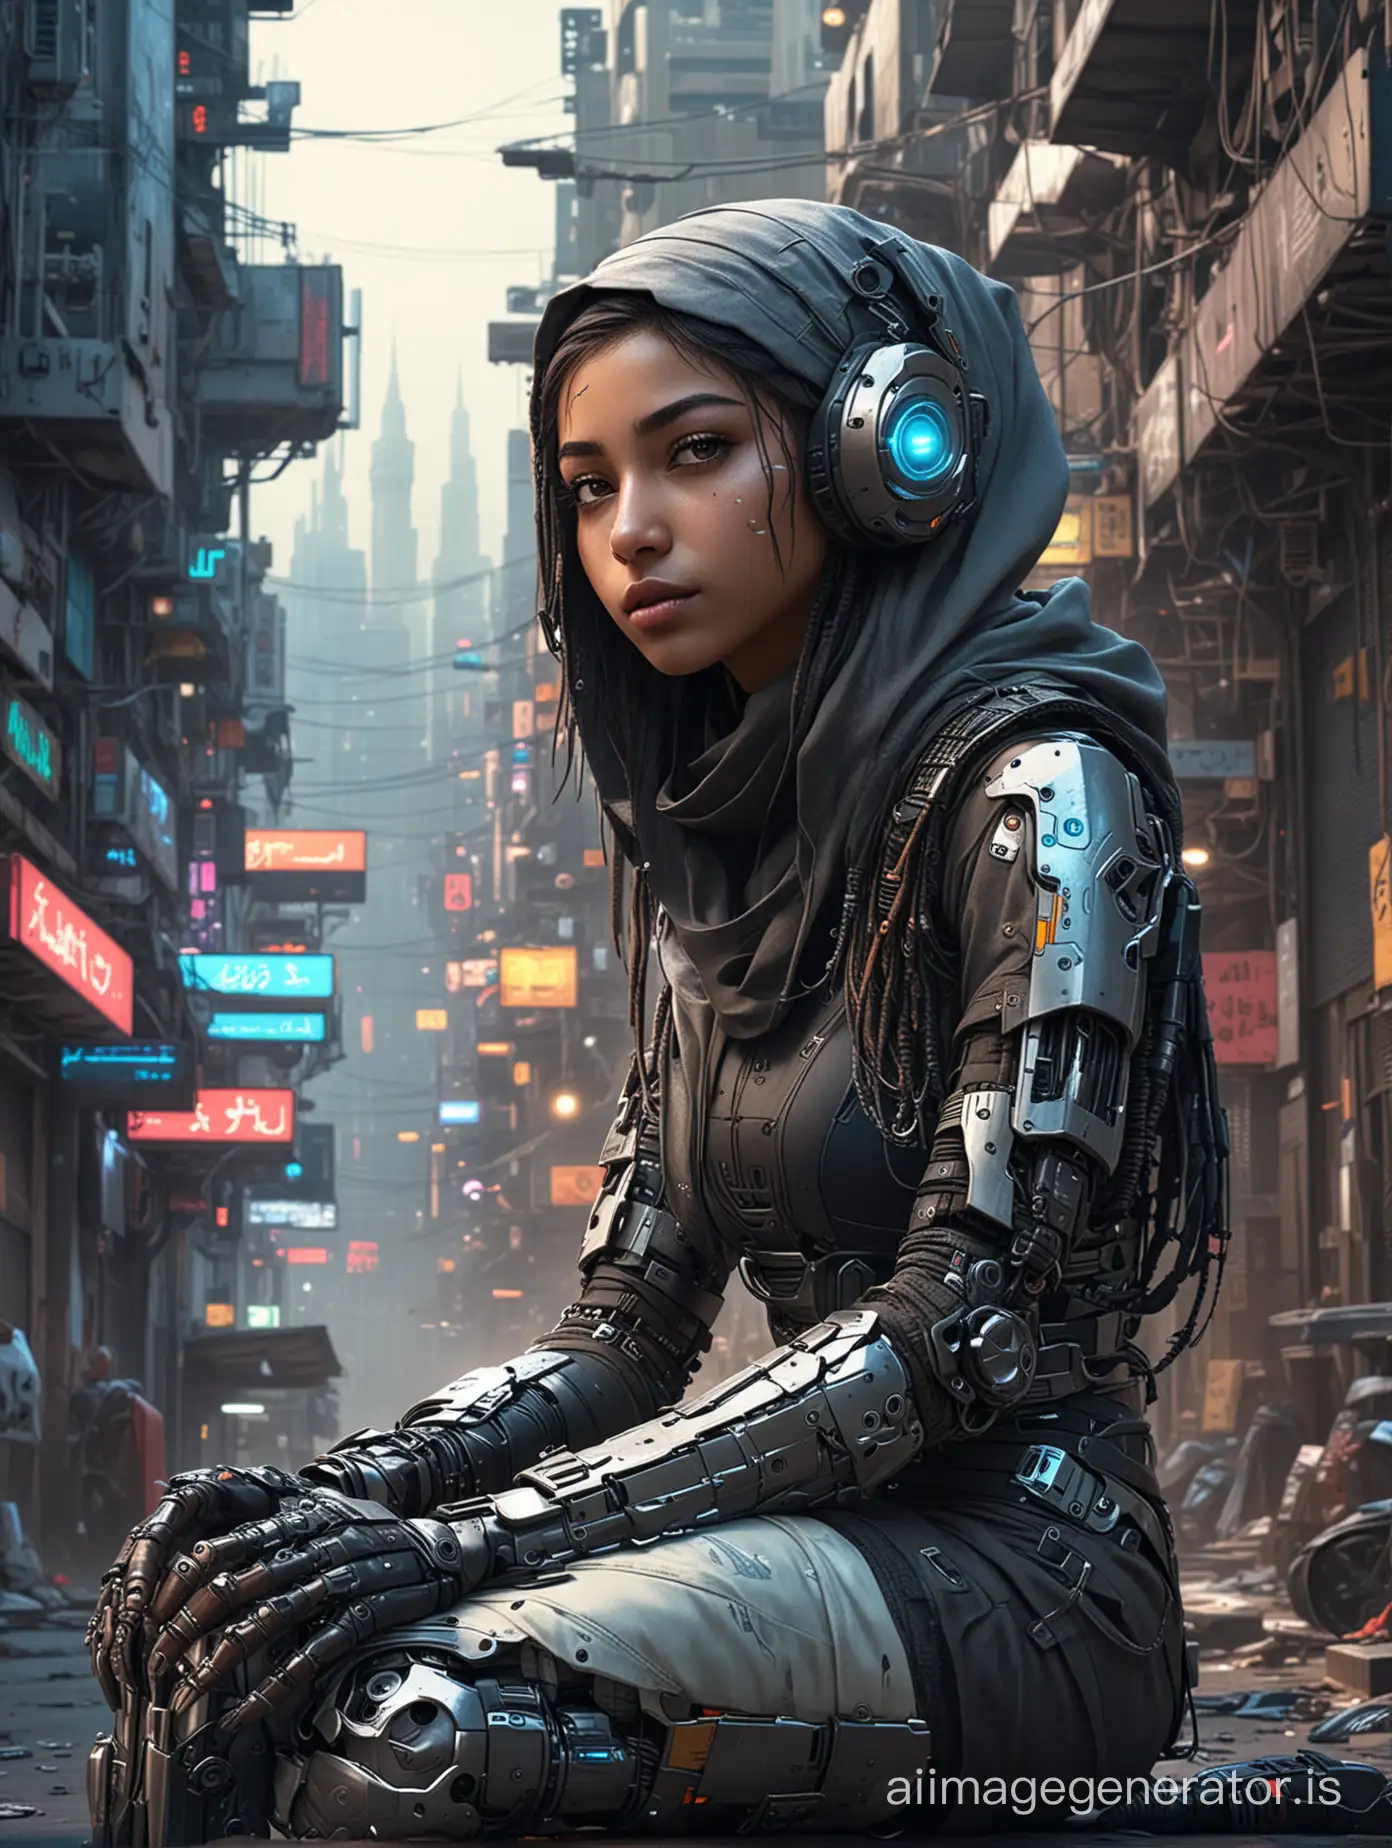 Muslim-Girl-Cyborg-in-High-Definition-Cyberpunk-Town